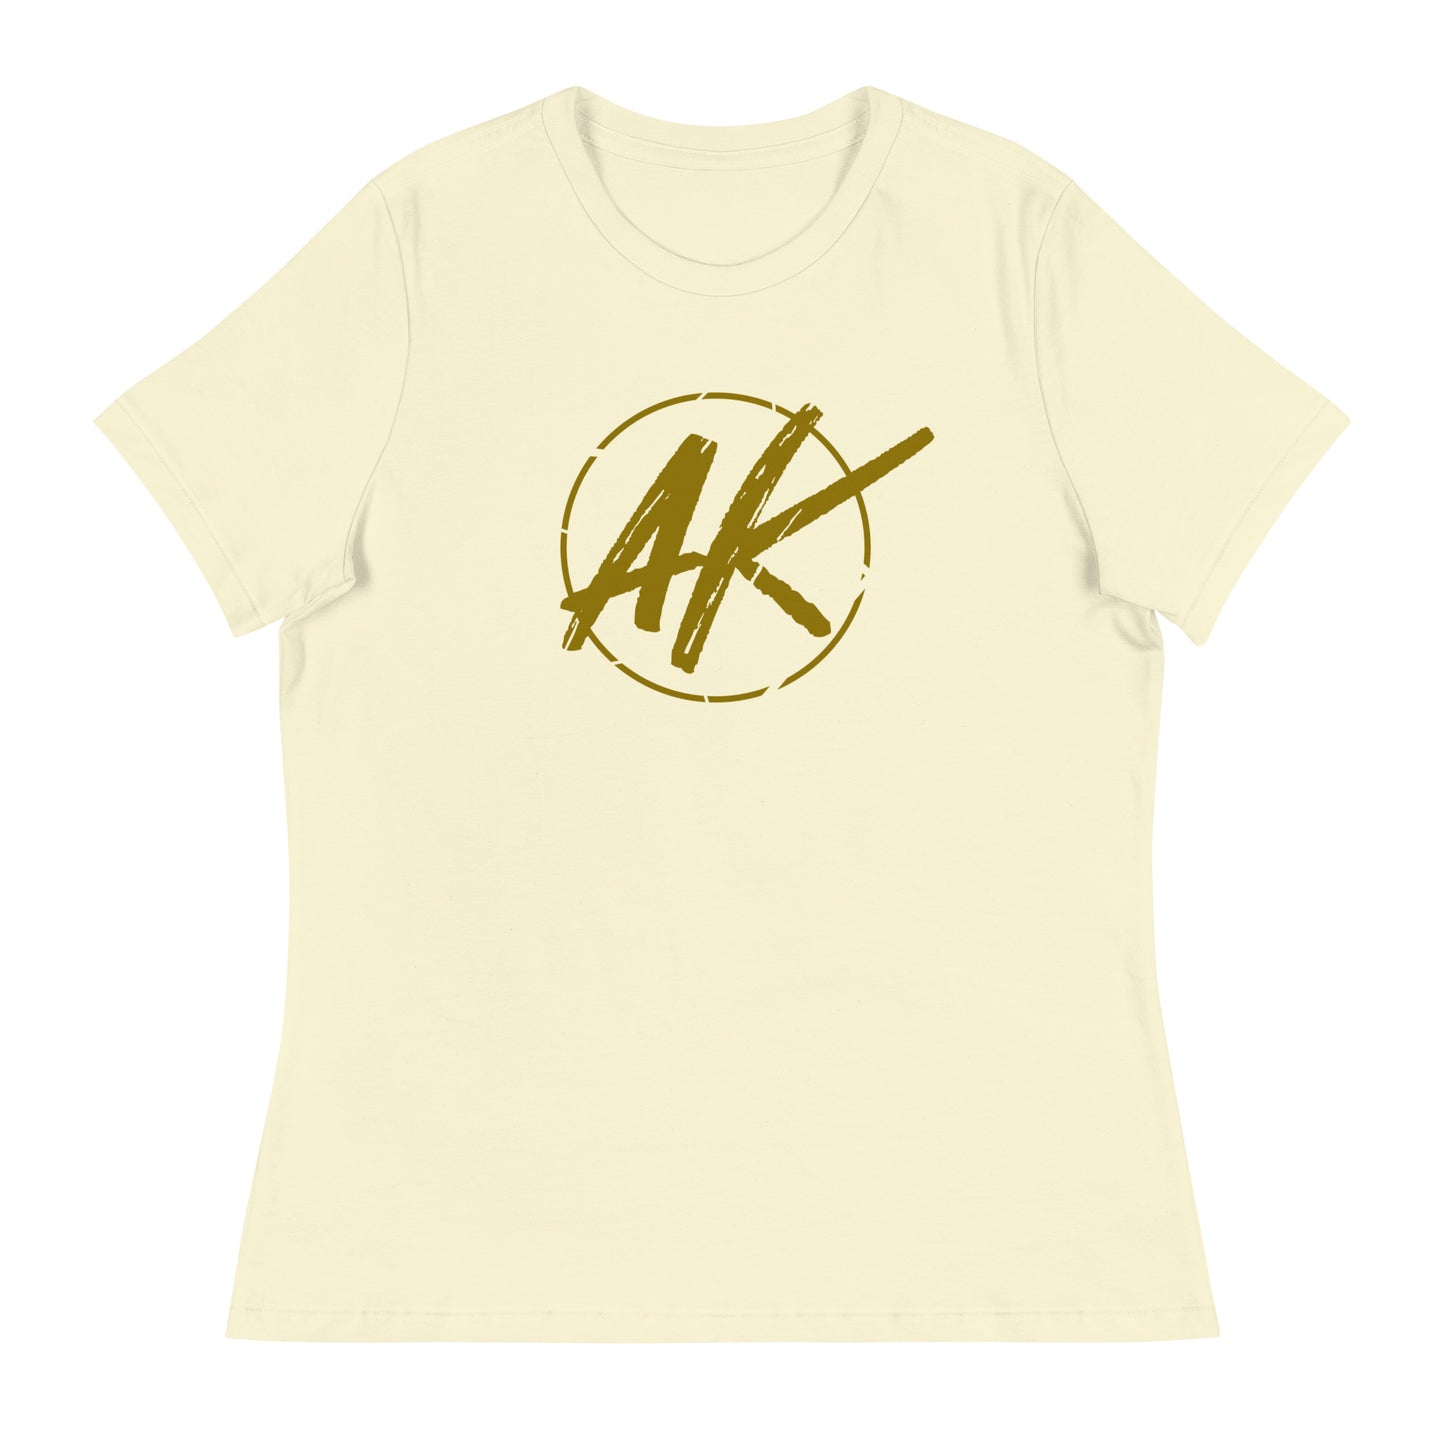 W| AK (gold)